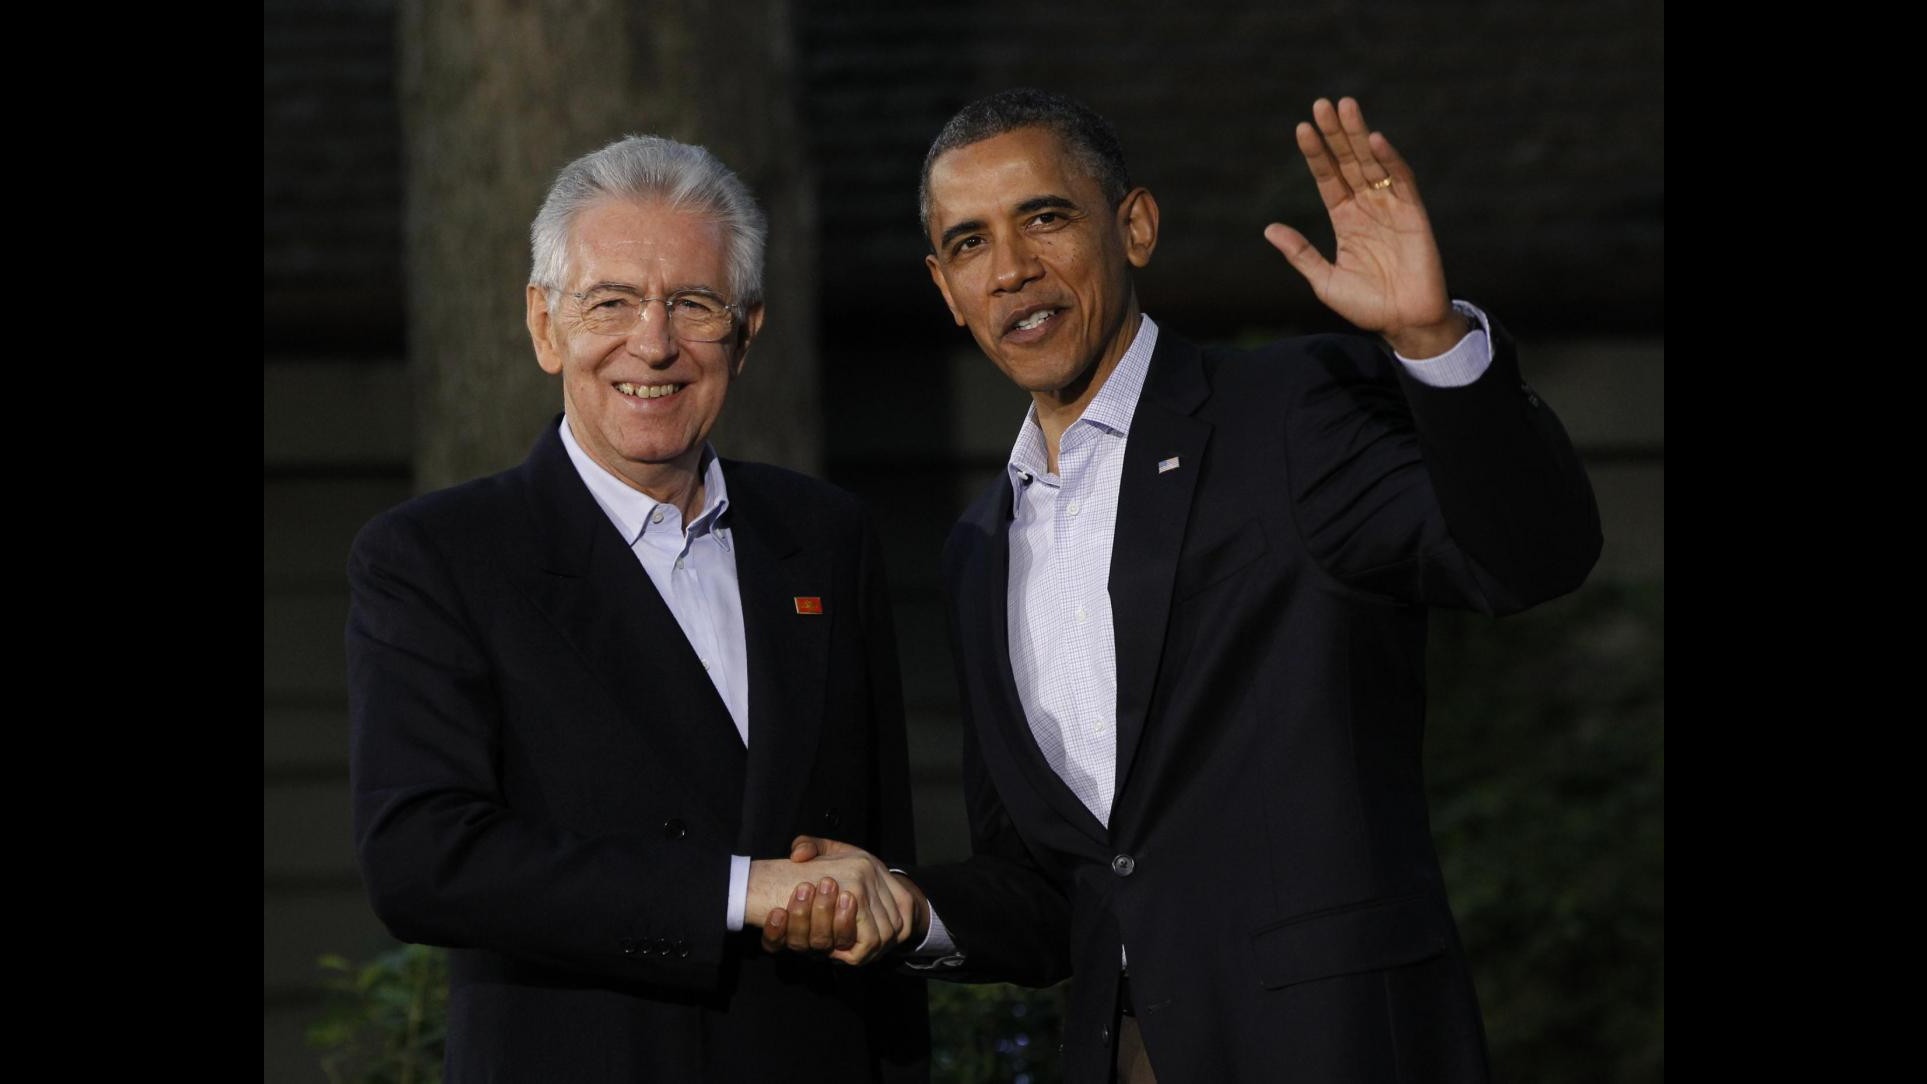 Usa 2012, Monti a Obama: Continuare cooperazione, tra noi c’è sintonia